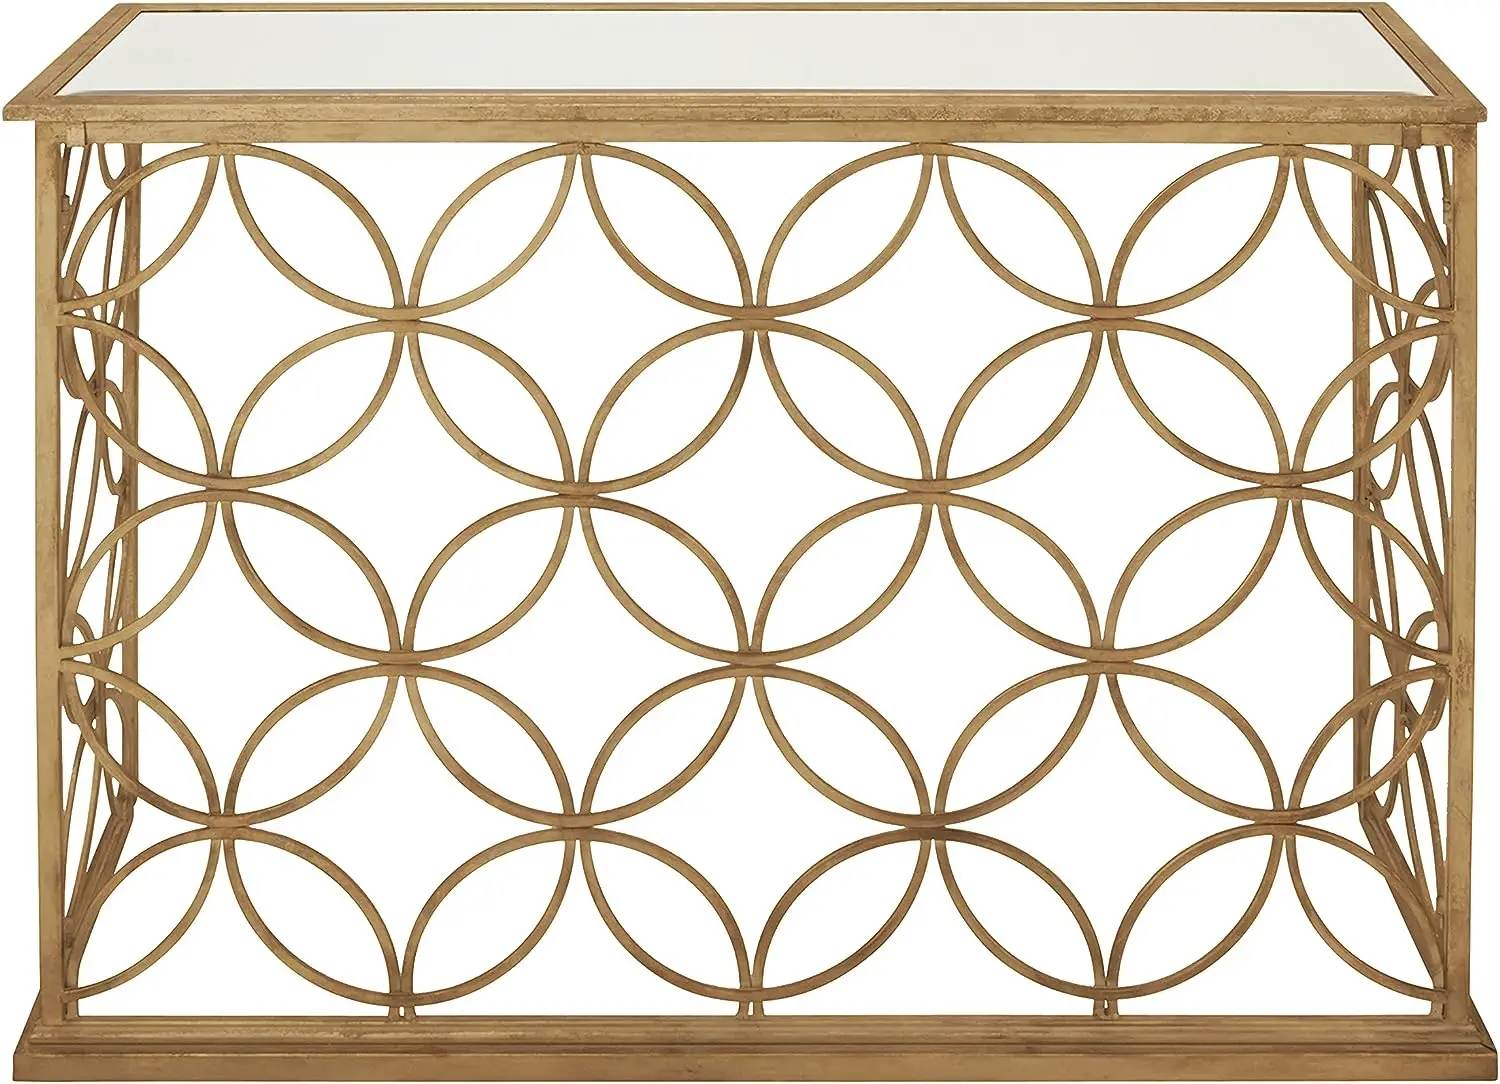 

Стол с геометрической консолью и зеркальным стеклянным верхом, 47x15x32 дюйма, золотистый